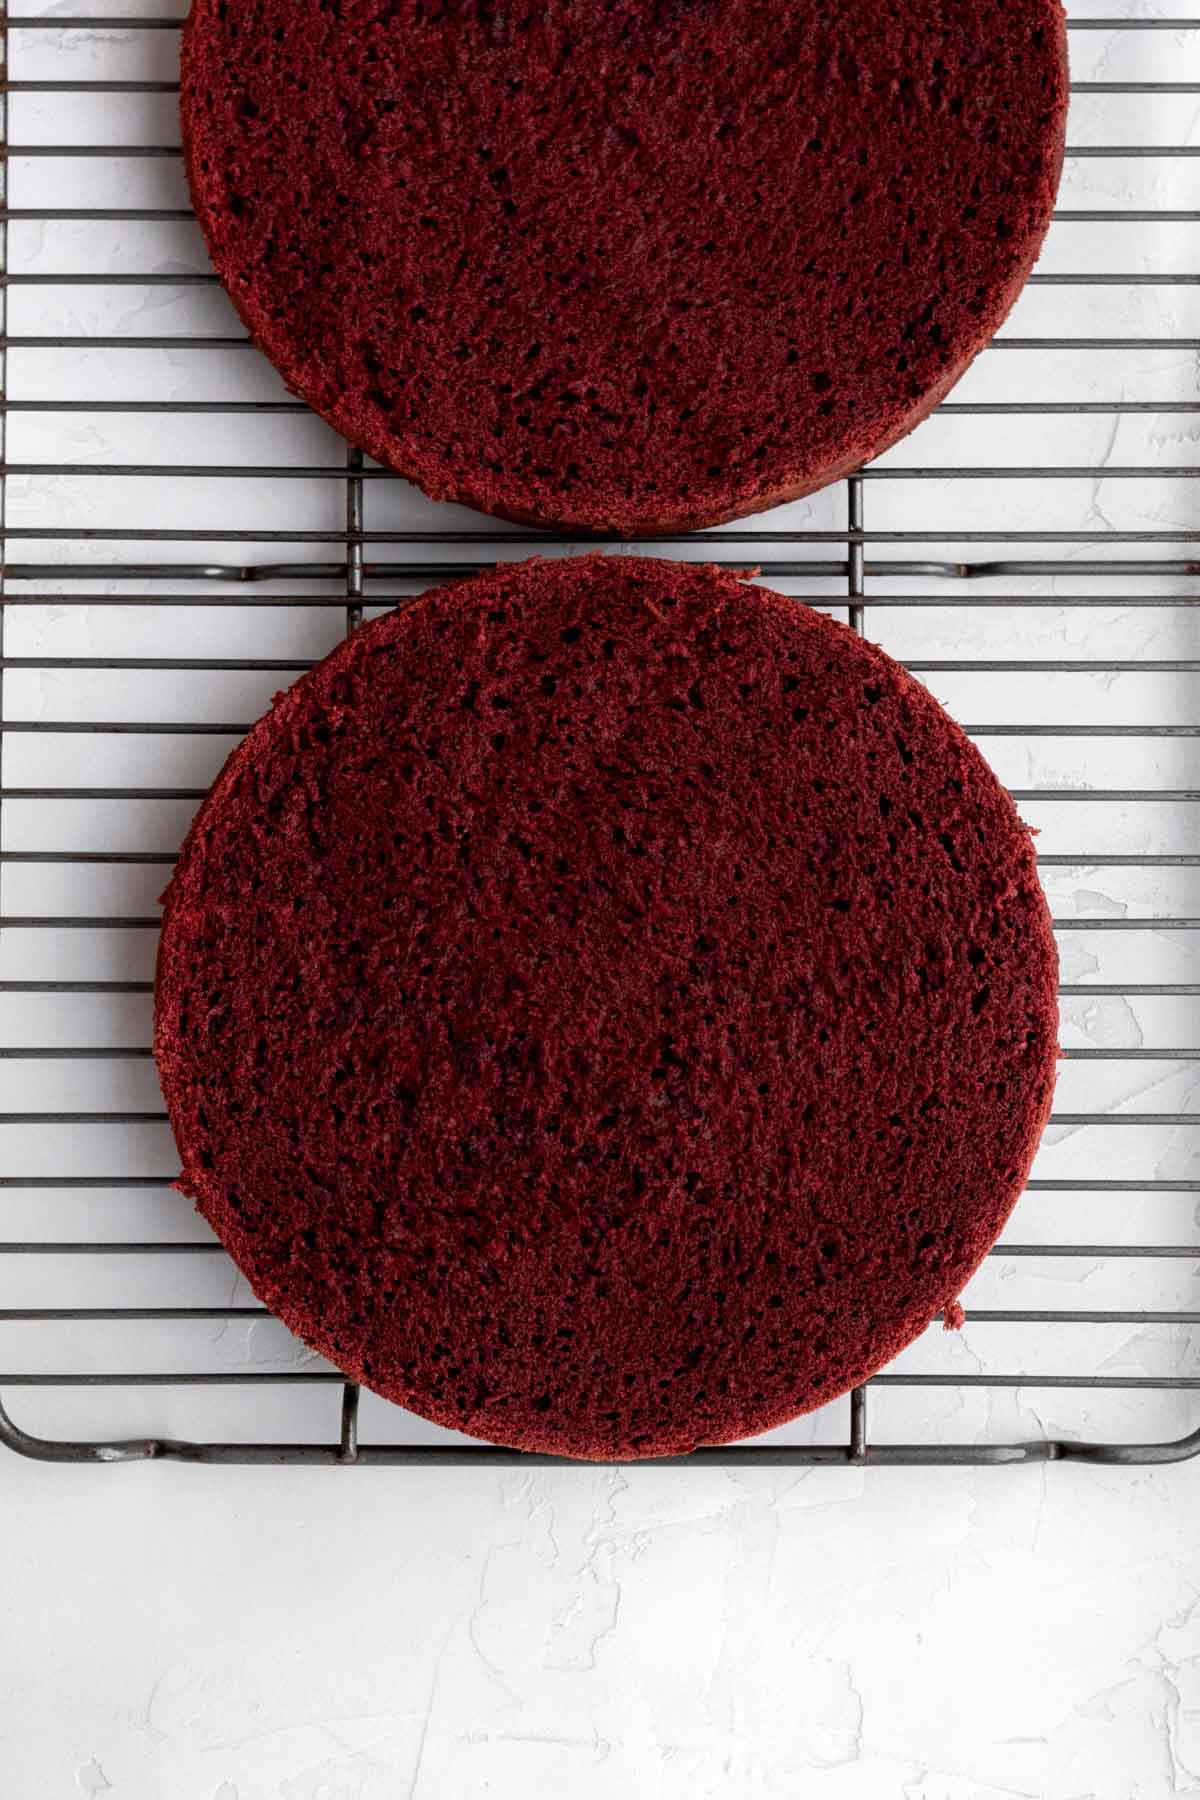 Red velvet cakes cut in half horizontally.